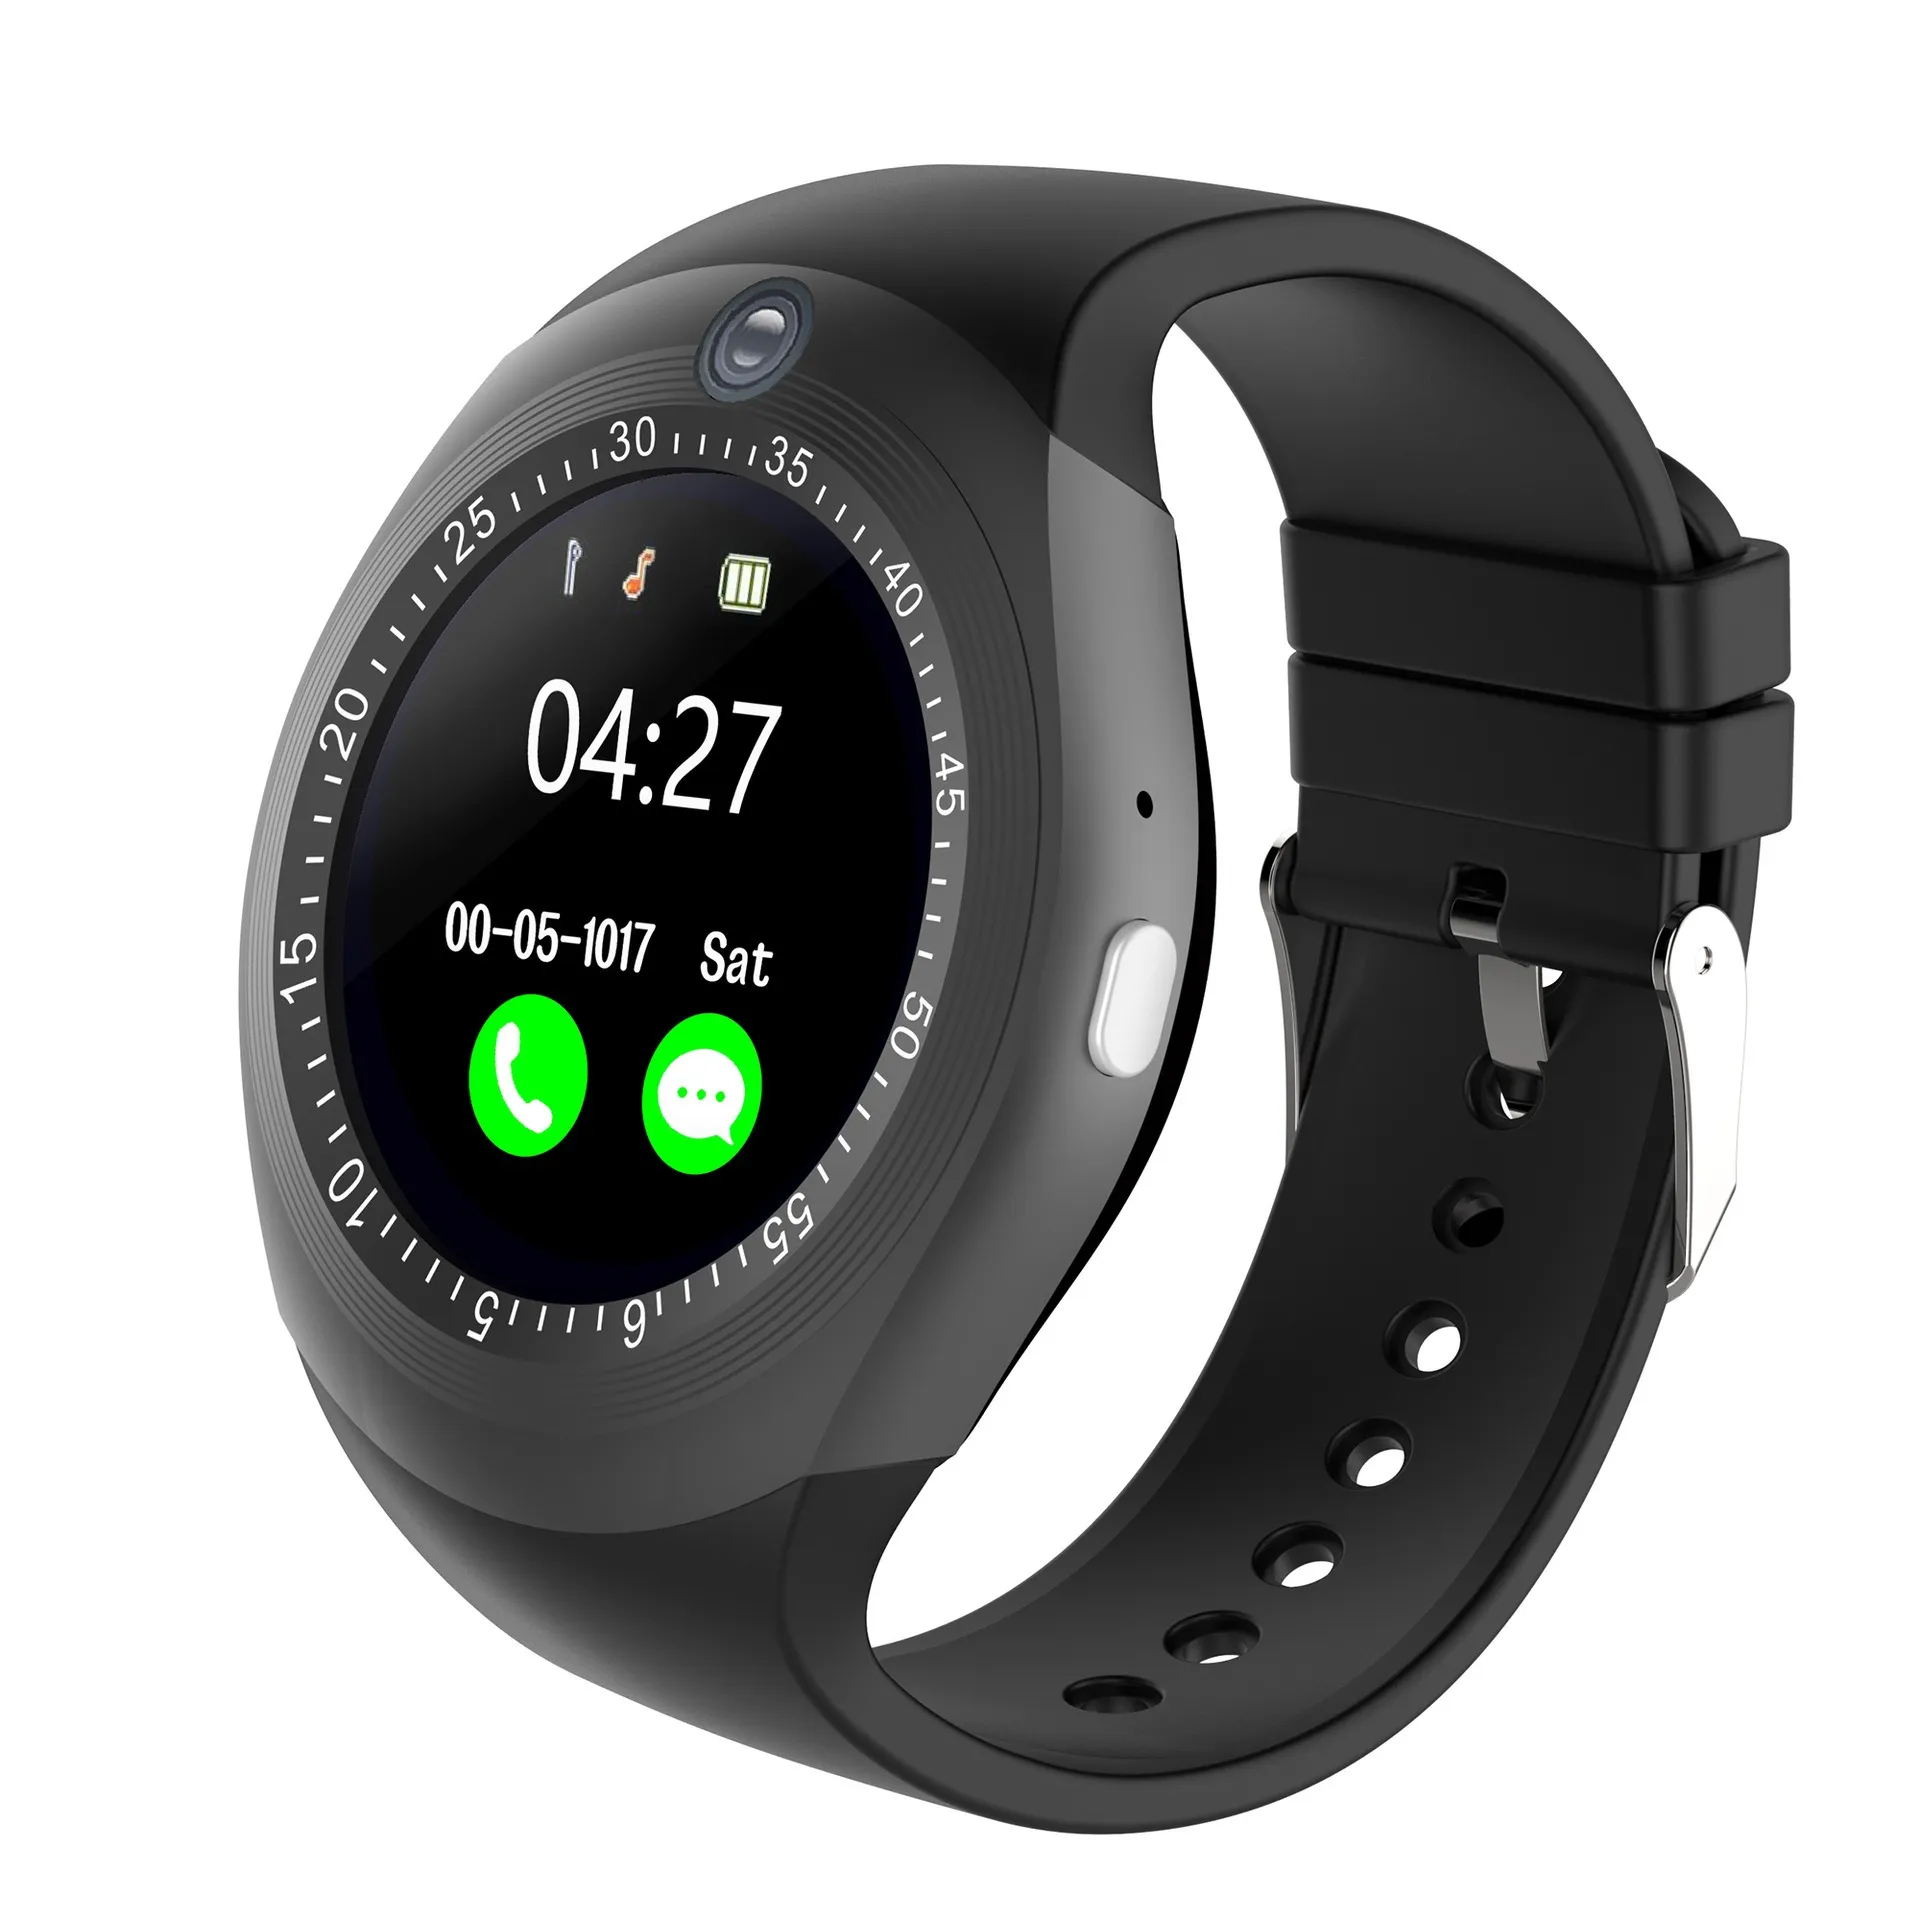 Like-Shop Smart Watch Y15 สมาร์ทวอทช์จอสัมผัส ใส่ซิมได้ แจ้งเตือนการโทร มีกล้อง วัดการนอน กันน้ำ Smartwatch  นาฬิกาโทรศัพท์ นาฬิกาออกกำลัง สายรัดข้อมือ นาฬิกาสมาทวอช นาฬิกาผู้ชาย นาฬิกาผู้หญิง   เมนูภาษาไทย (ส่งด่วน1-2 วัน ได้รับ)